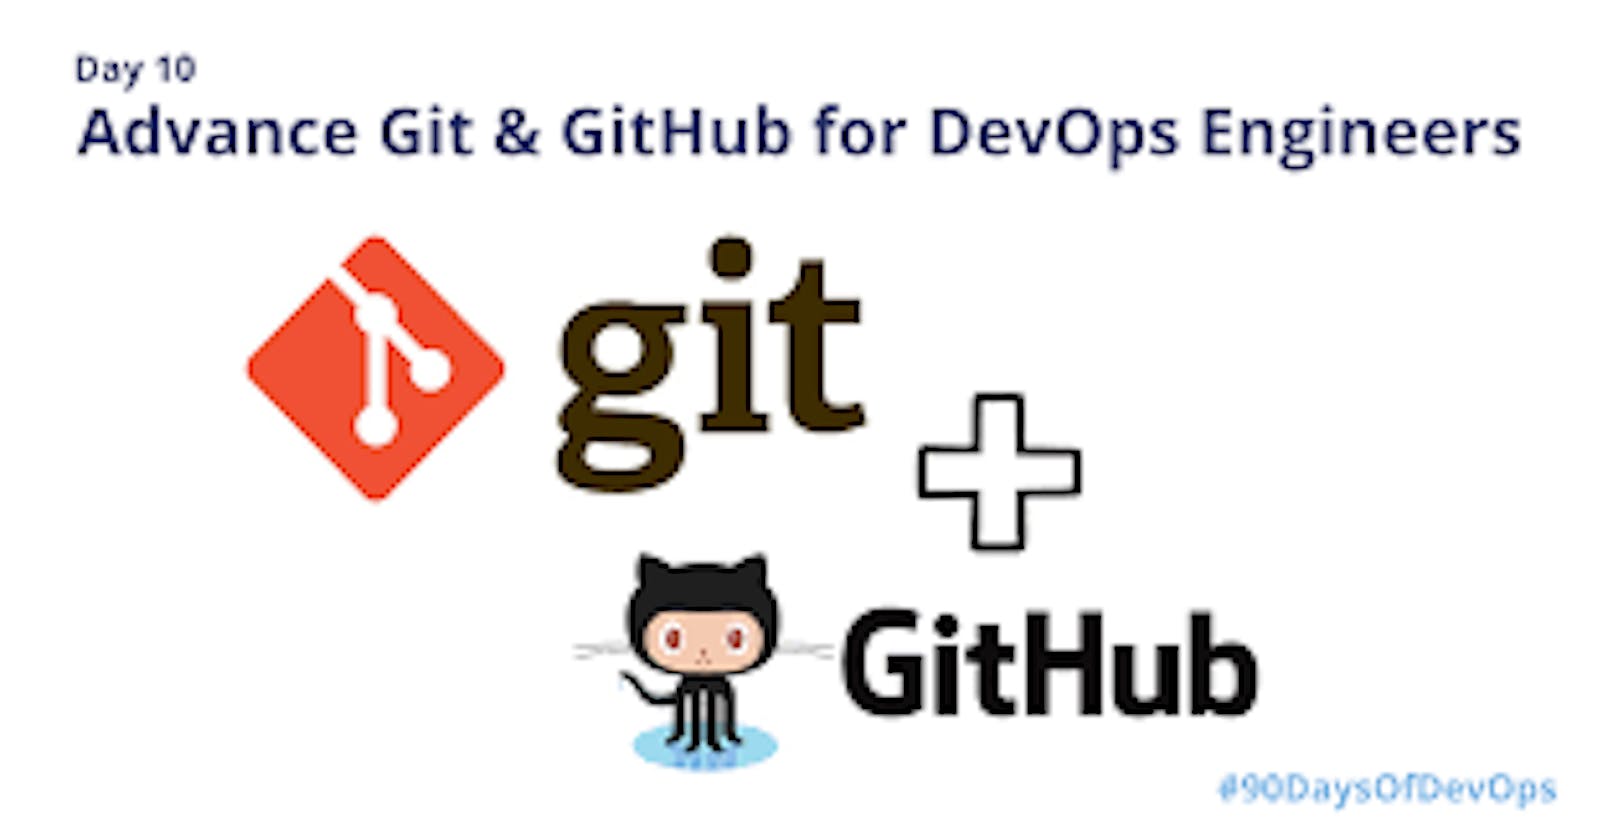 Day 10 Advance Git & GitHub for DevOps Engineers.